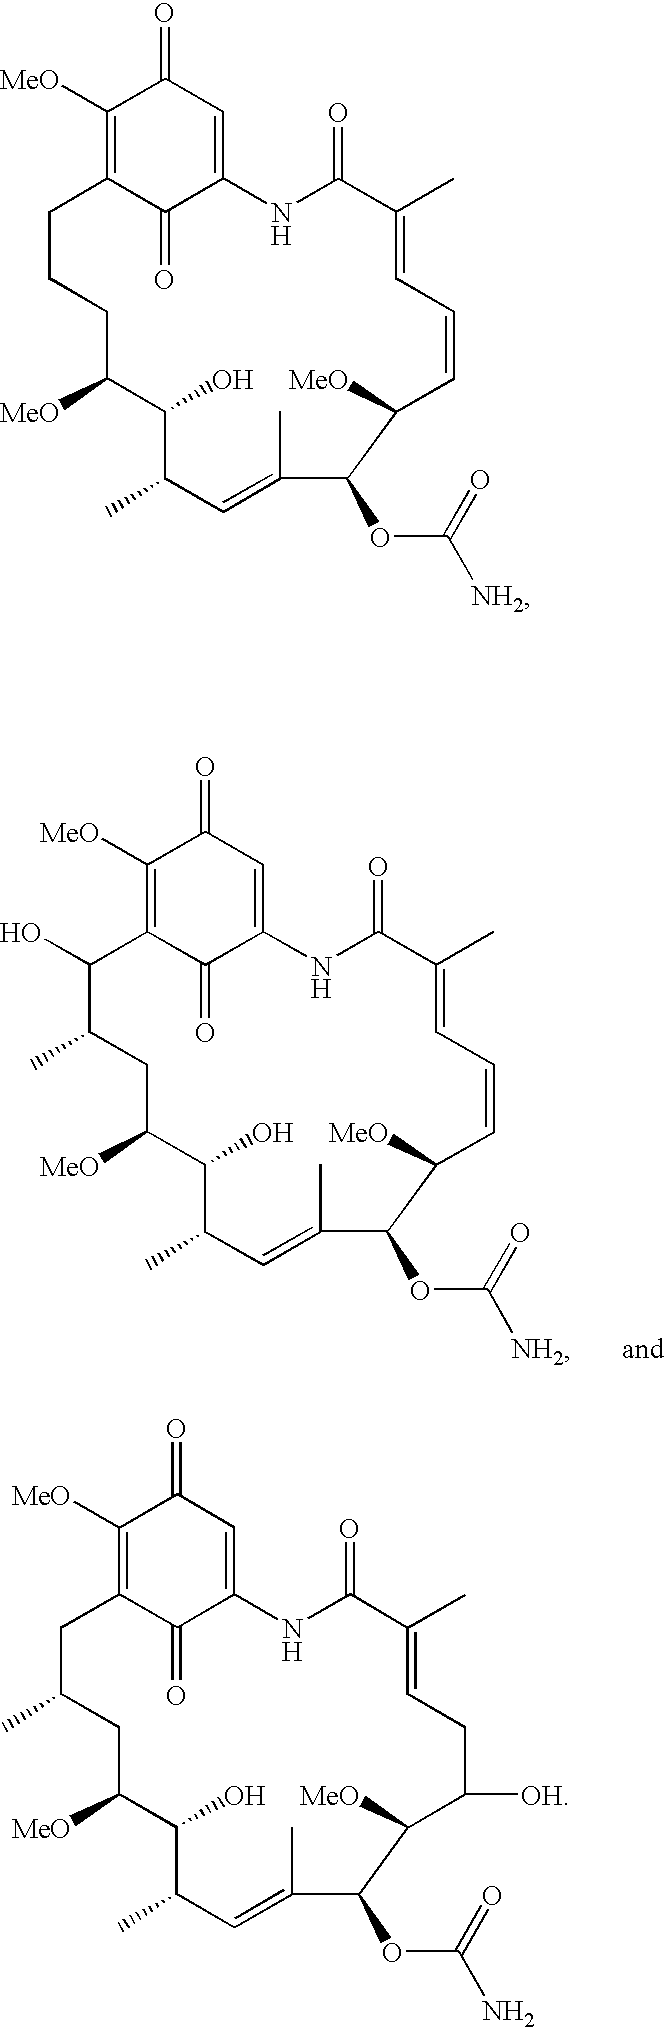 Benzoquinone ansamycins